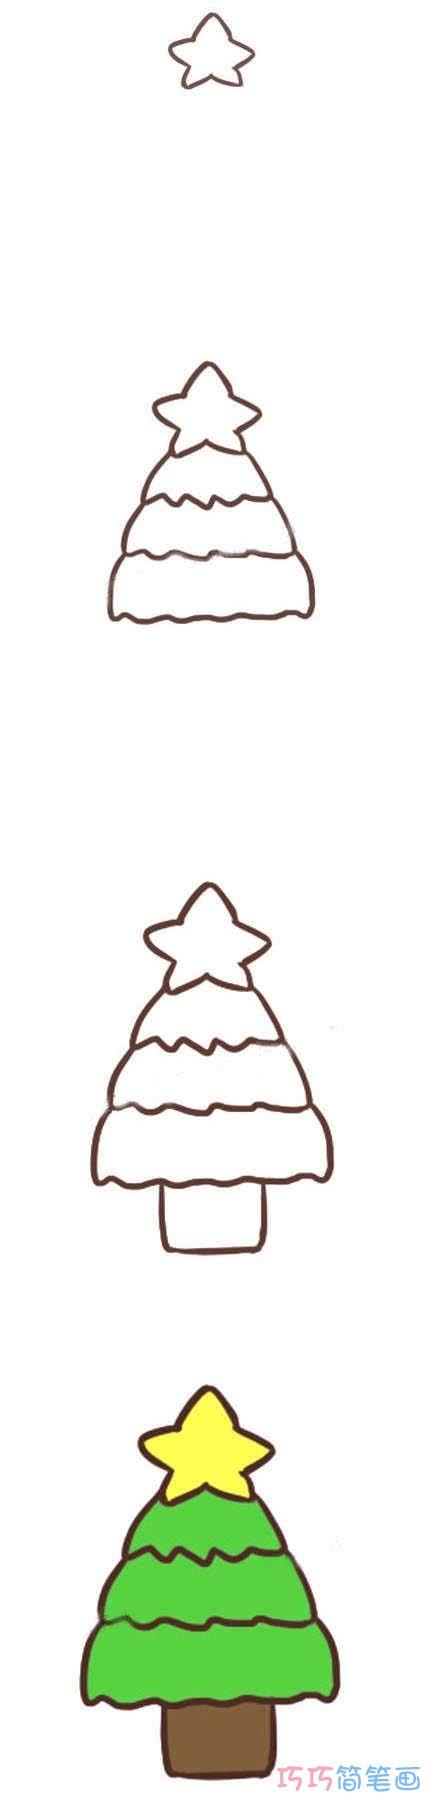 幼儿简笔画圣诞树的画法步骤涂颜色简单漂亮